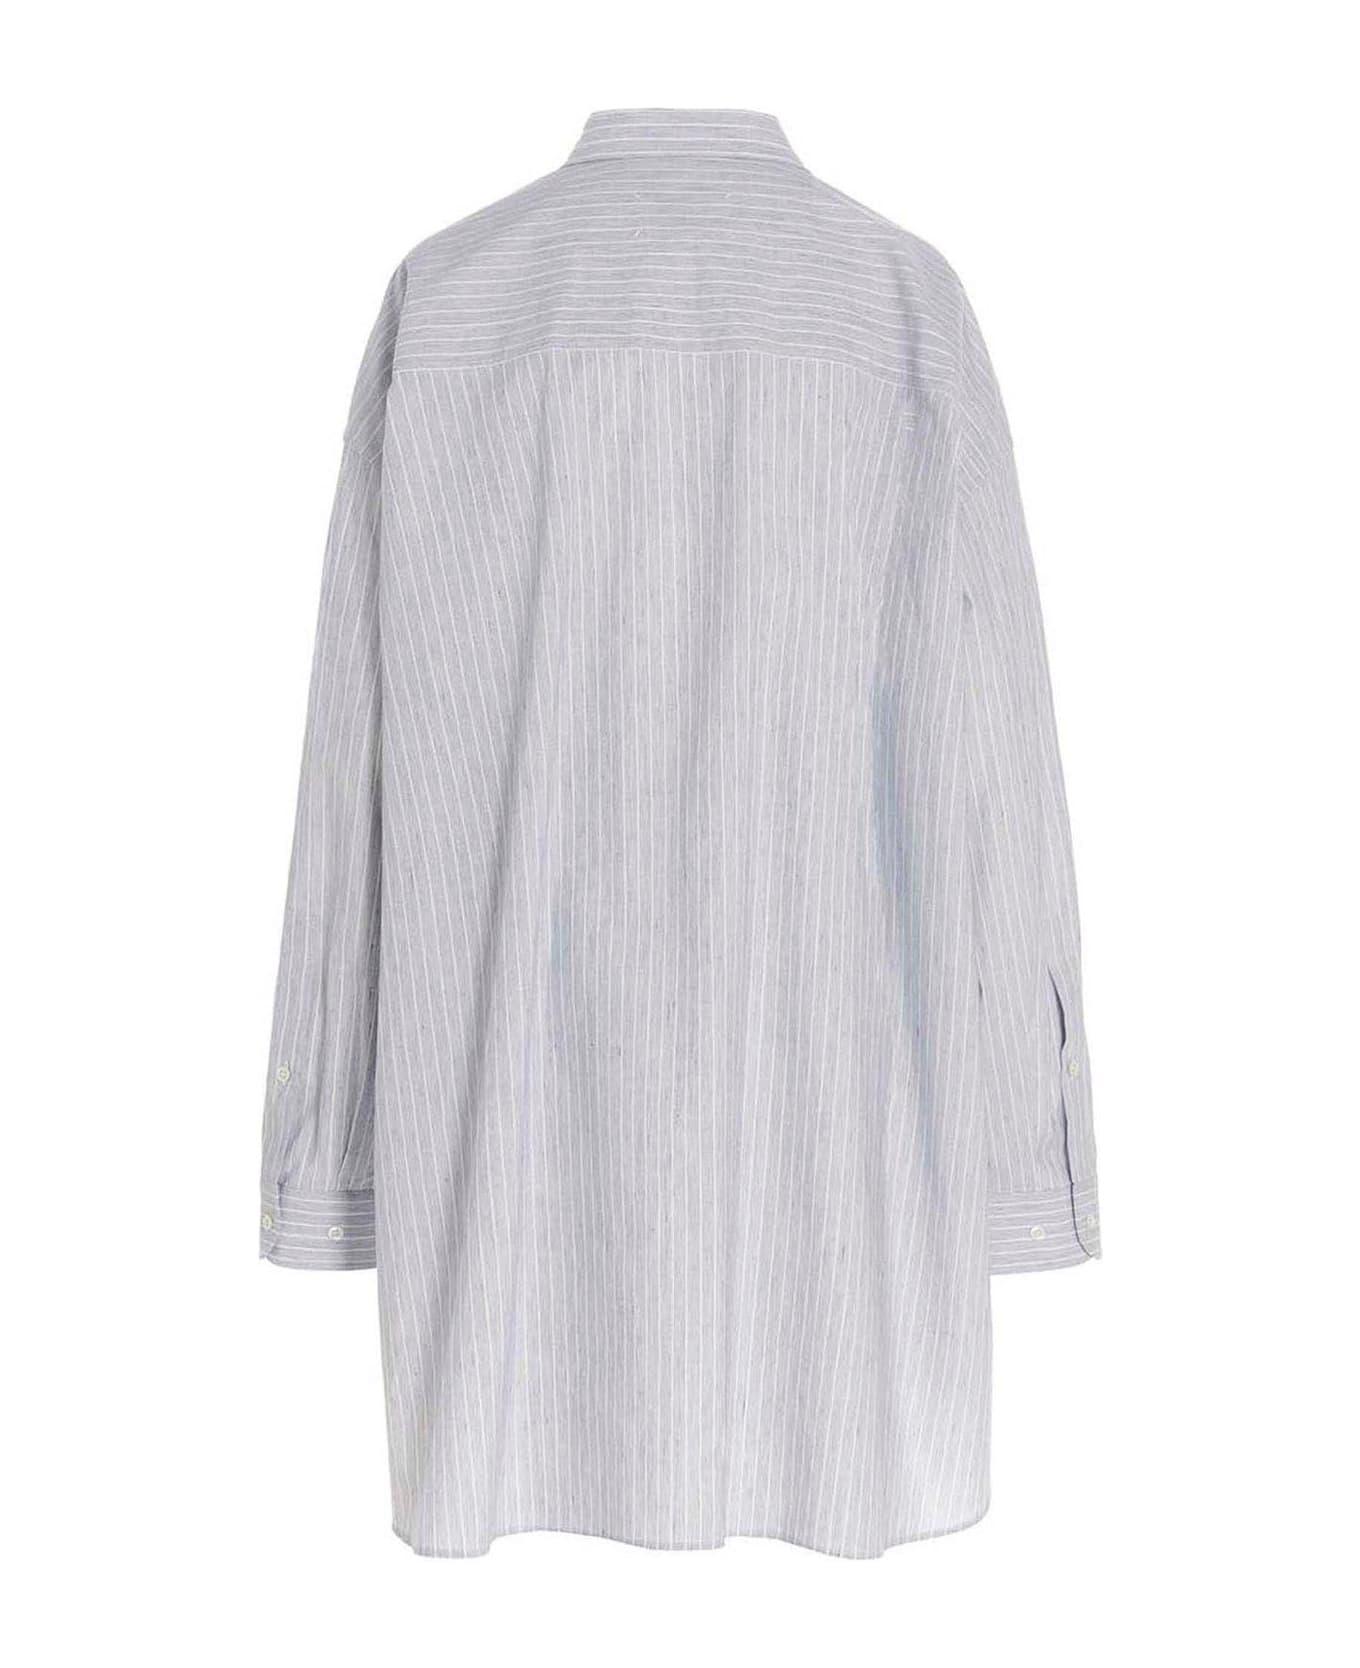 Maison Margiela Striped Long-sleeved Shirt - Stripe white navy シャツ